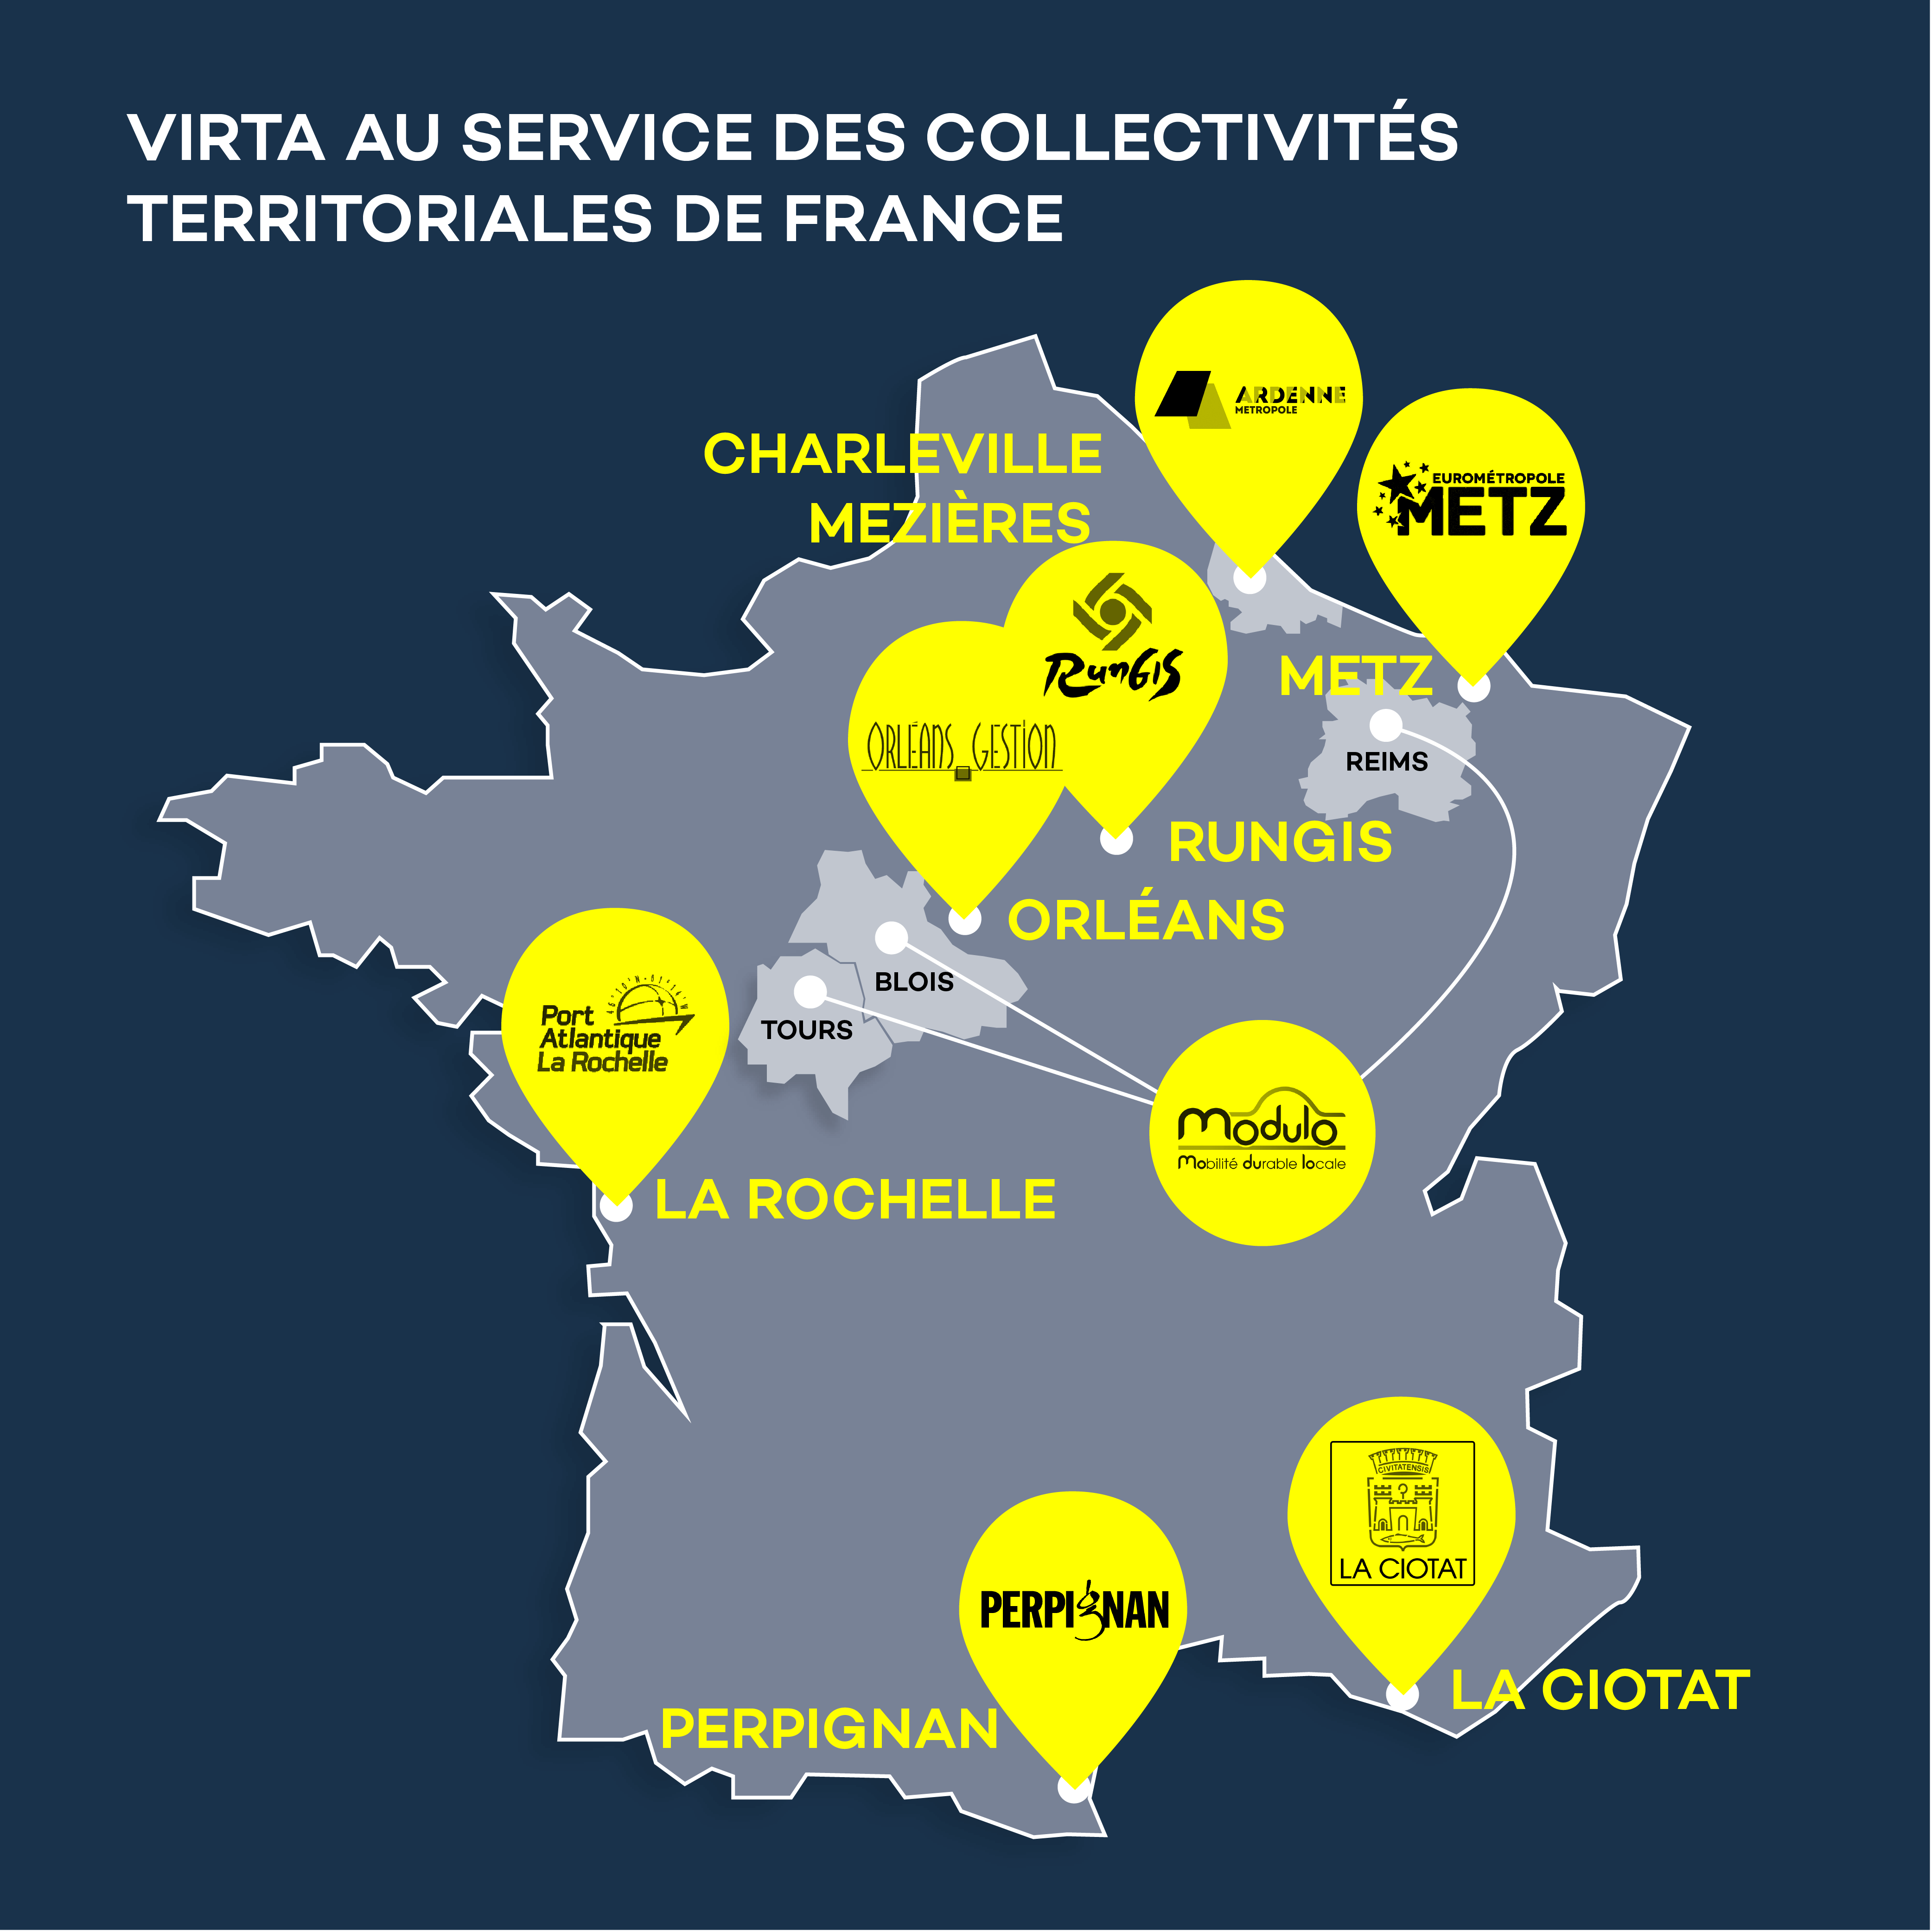 20230922 Virta au service des collectivités territoriales de France (2)